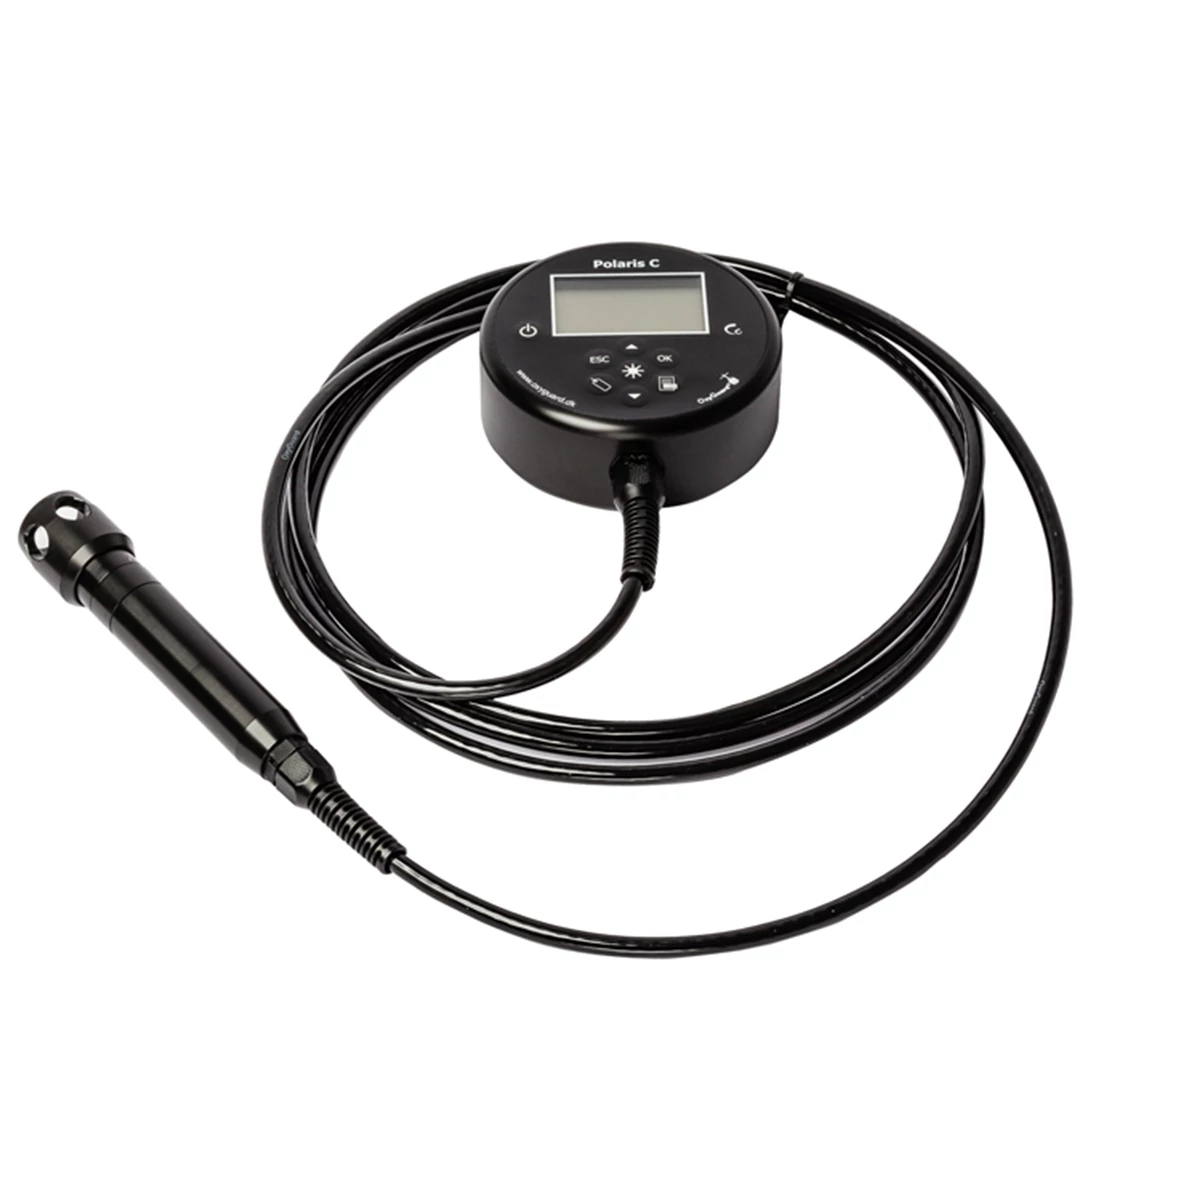 مقياس الأكسجين ودرجة الحرارة المحمول باليد مع علامات NFC وتقنية Bluetooth